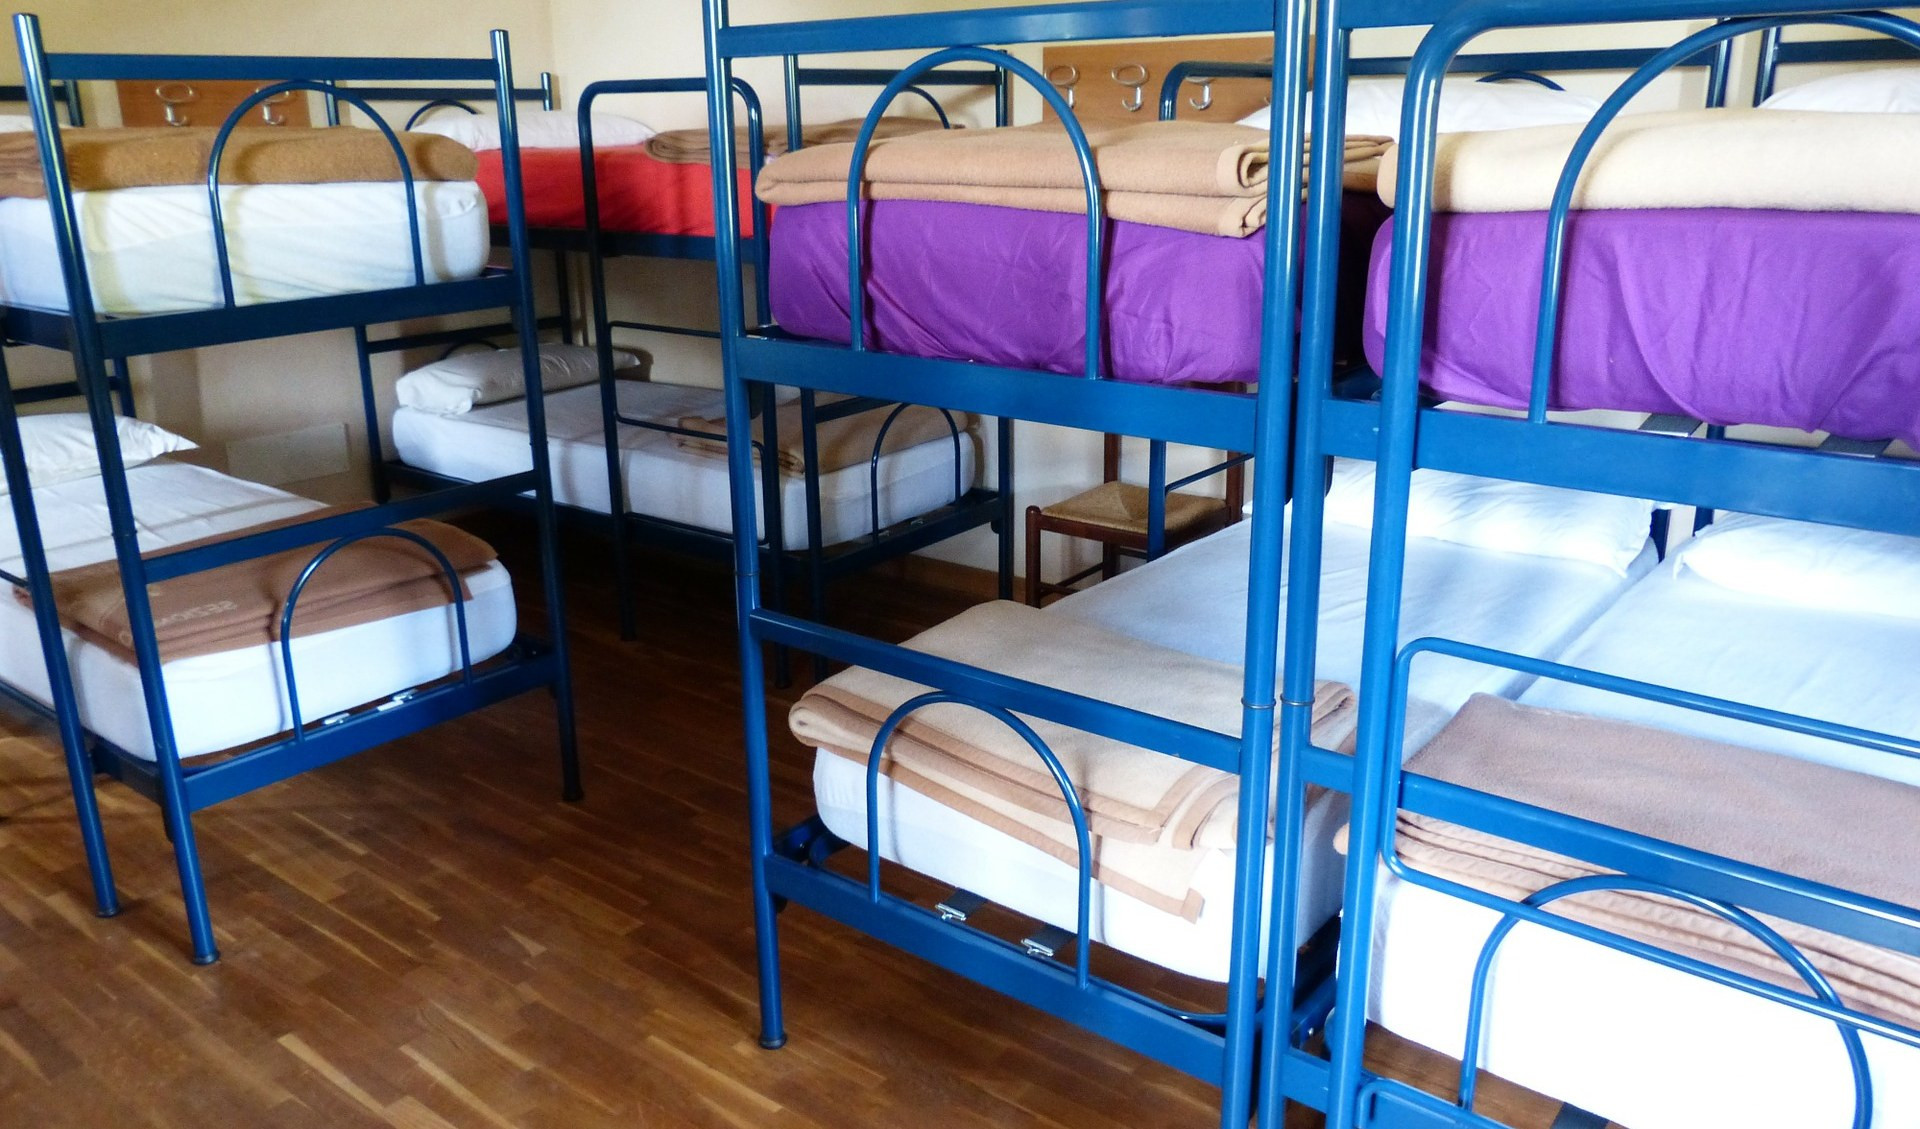 Regione Liguria apre il bando per ospitare i profughi ucraini: hotel, strutture e anche agriturismi 